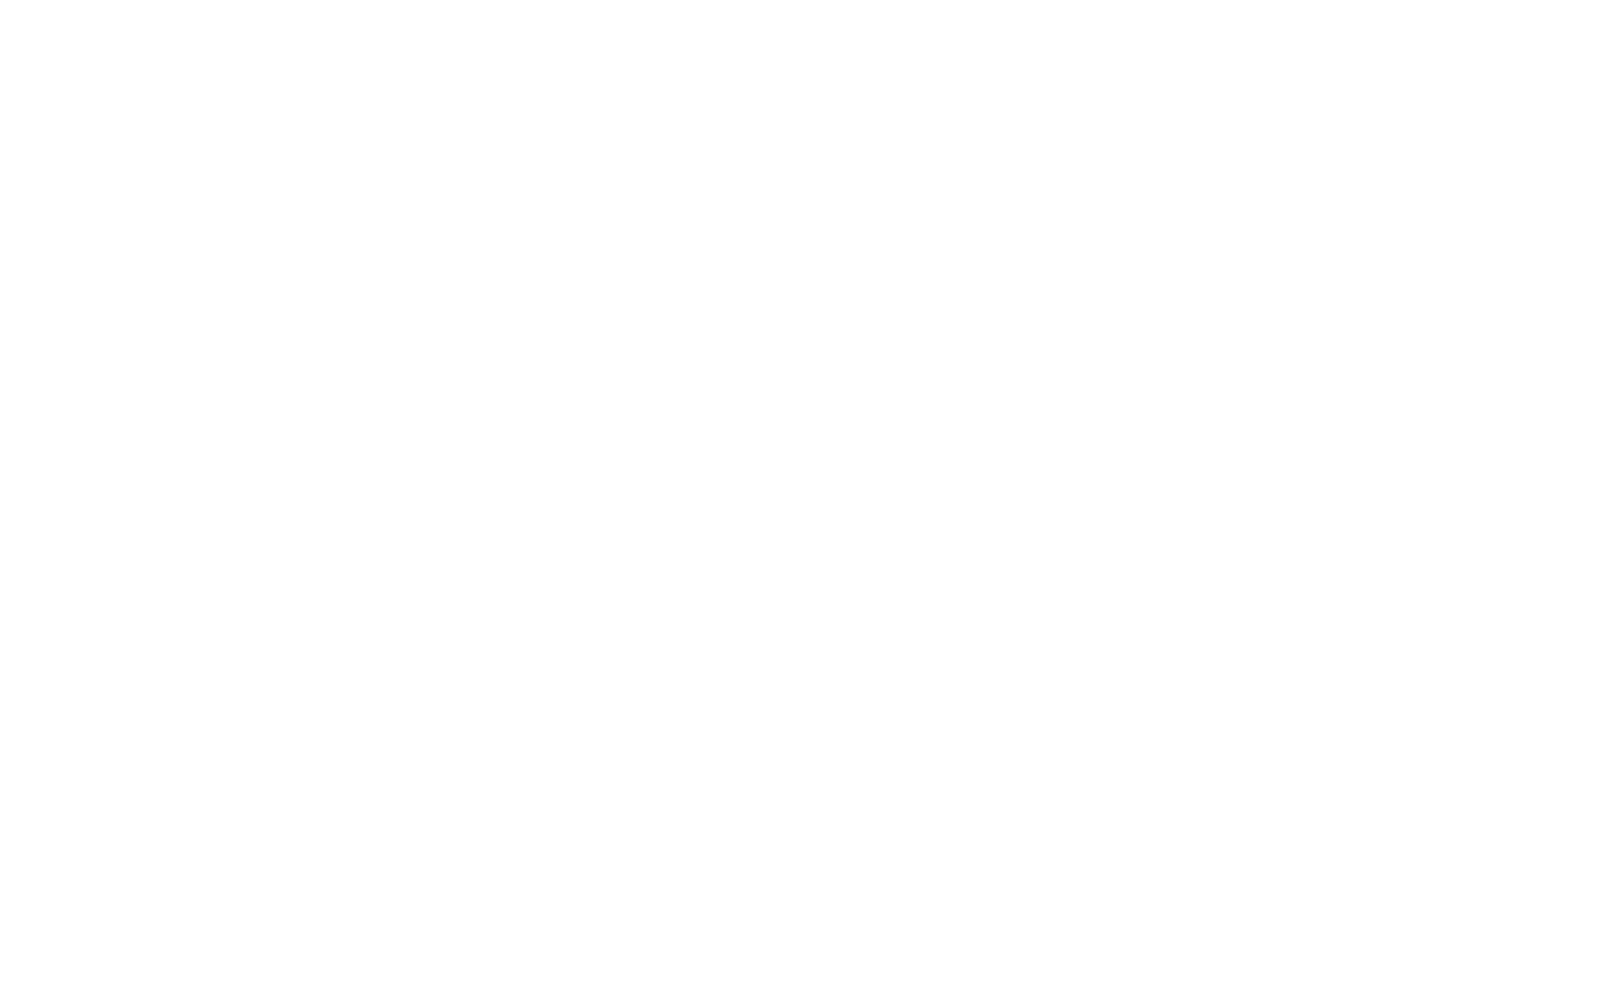 High Desert Utilities